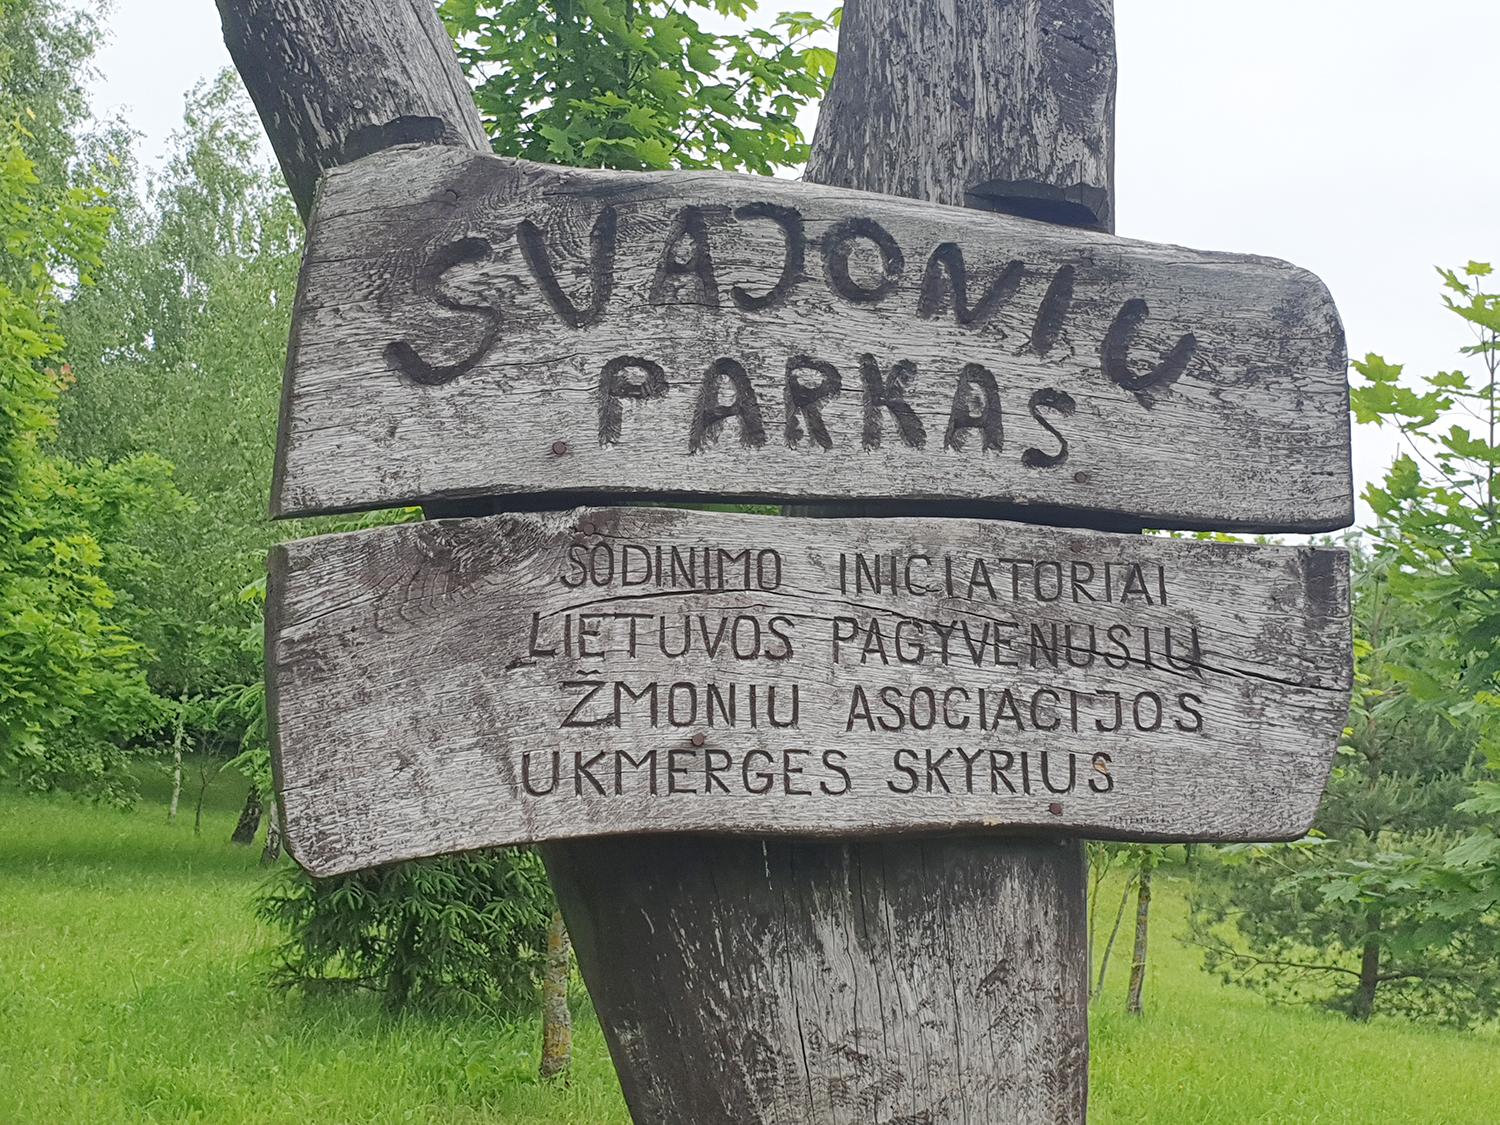 Skelbdami parko pavadinimo laimėtoją suklydo / Ukmergėje Svajonių parkas jau įkurtas. Tačiau šis pavadinimas paskelbtas laimėtoju renkant pavadinimą parkui prie ligoninės.  Skaistės Vasiliauskaitės-Dančenkovienės nuotr.